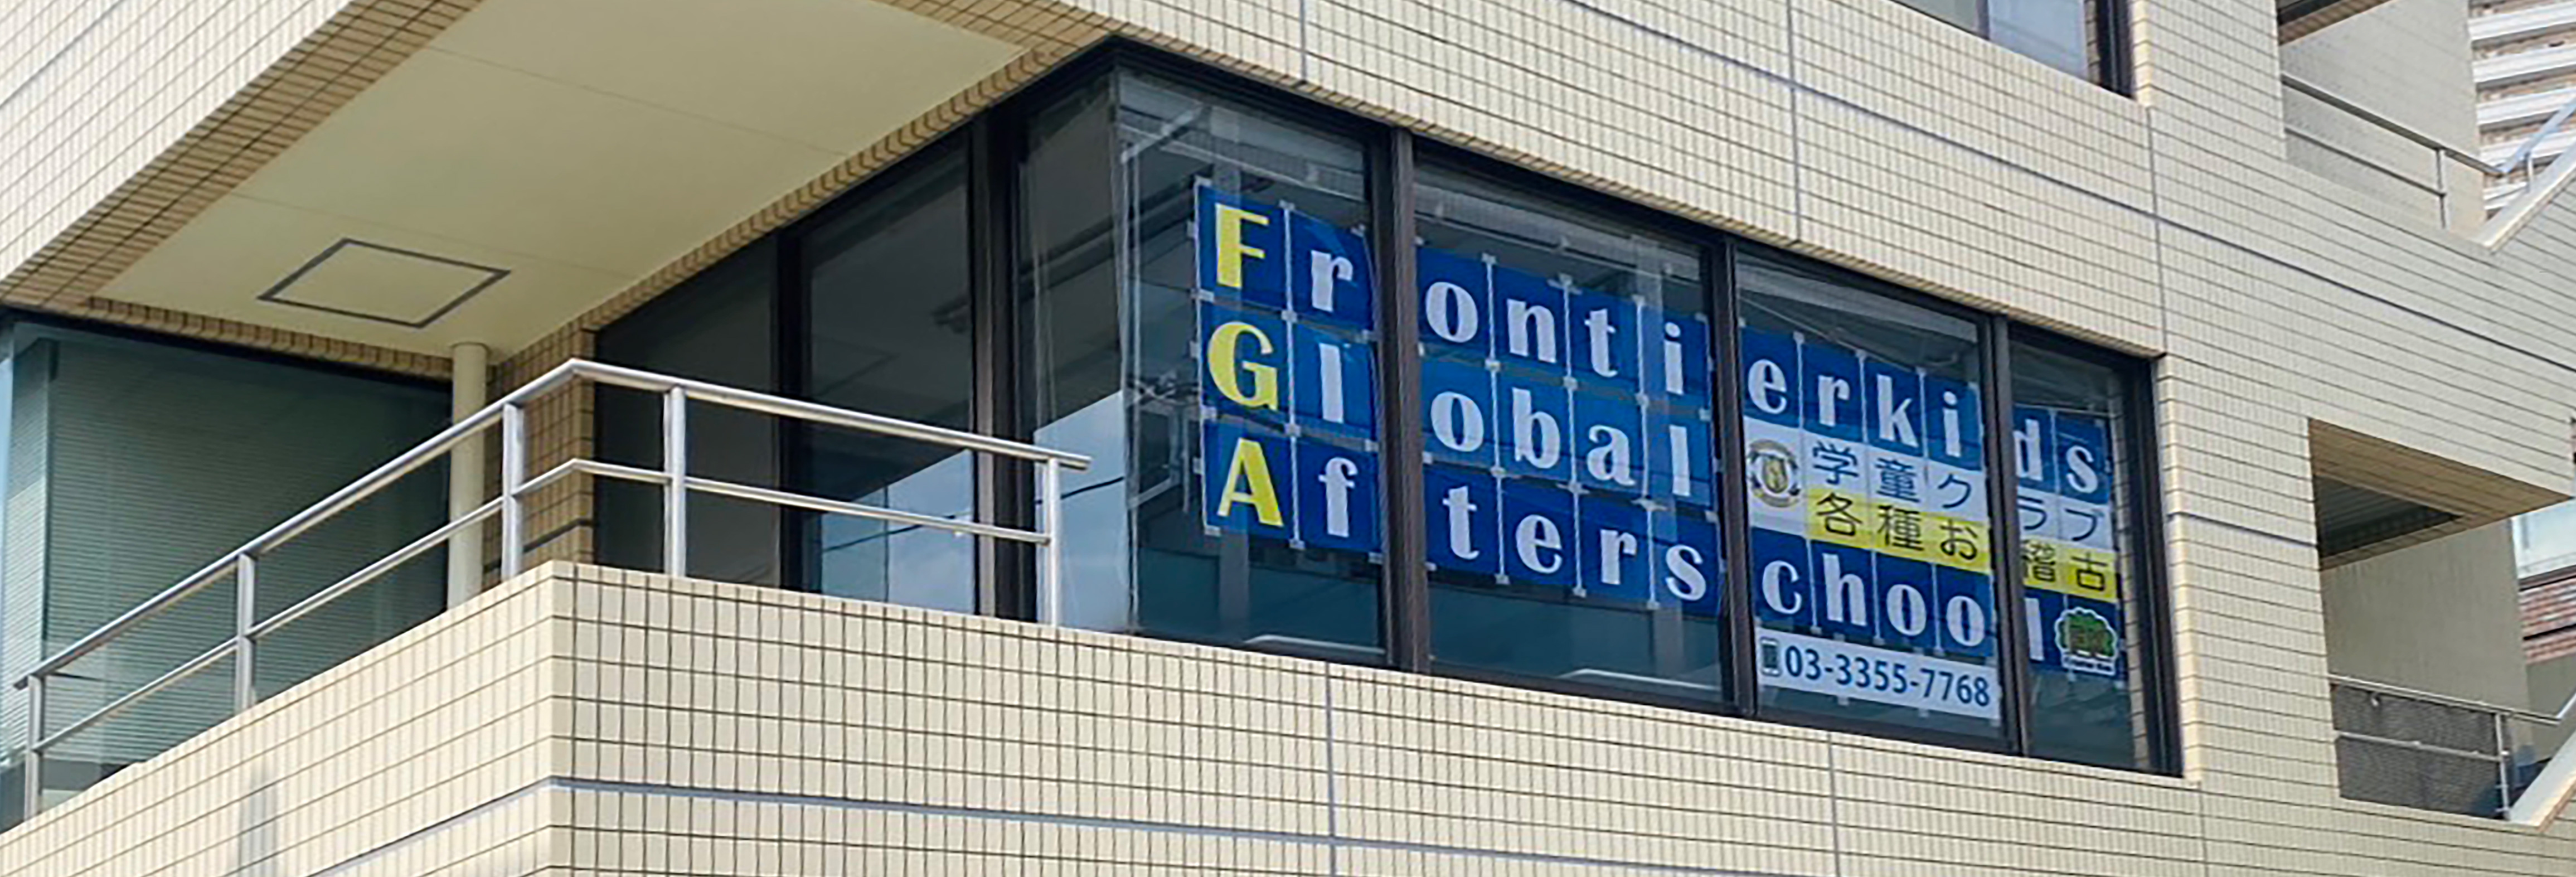 Frontierkids Global Afterschool